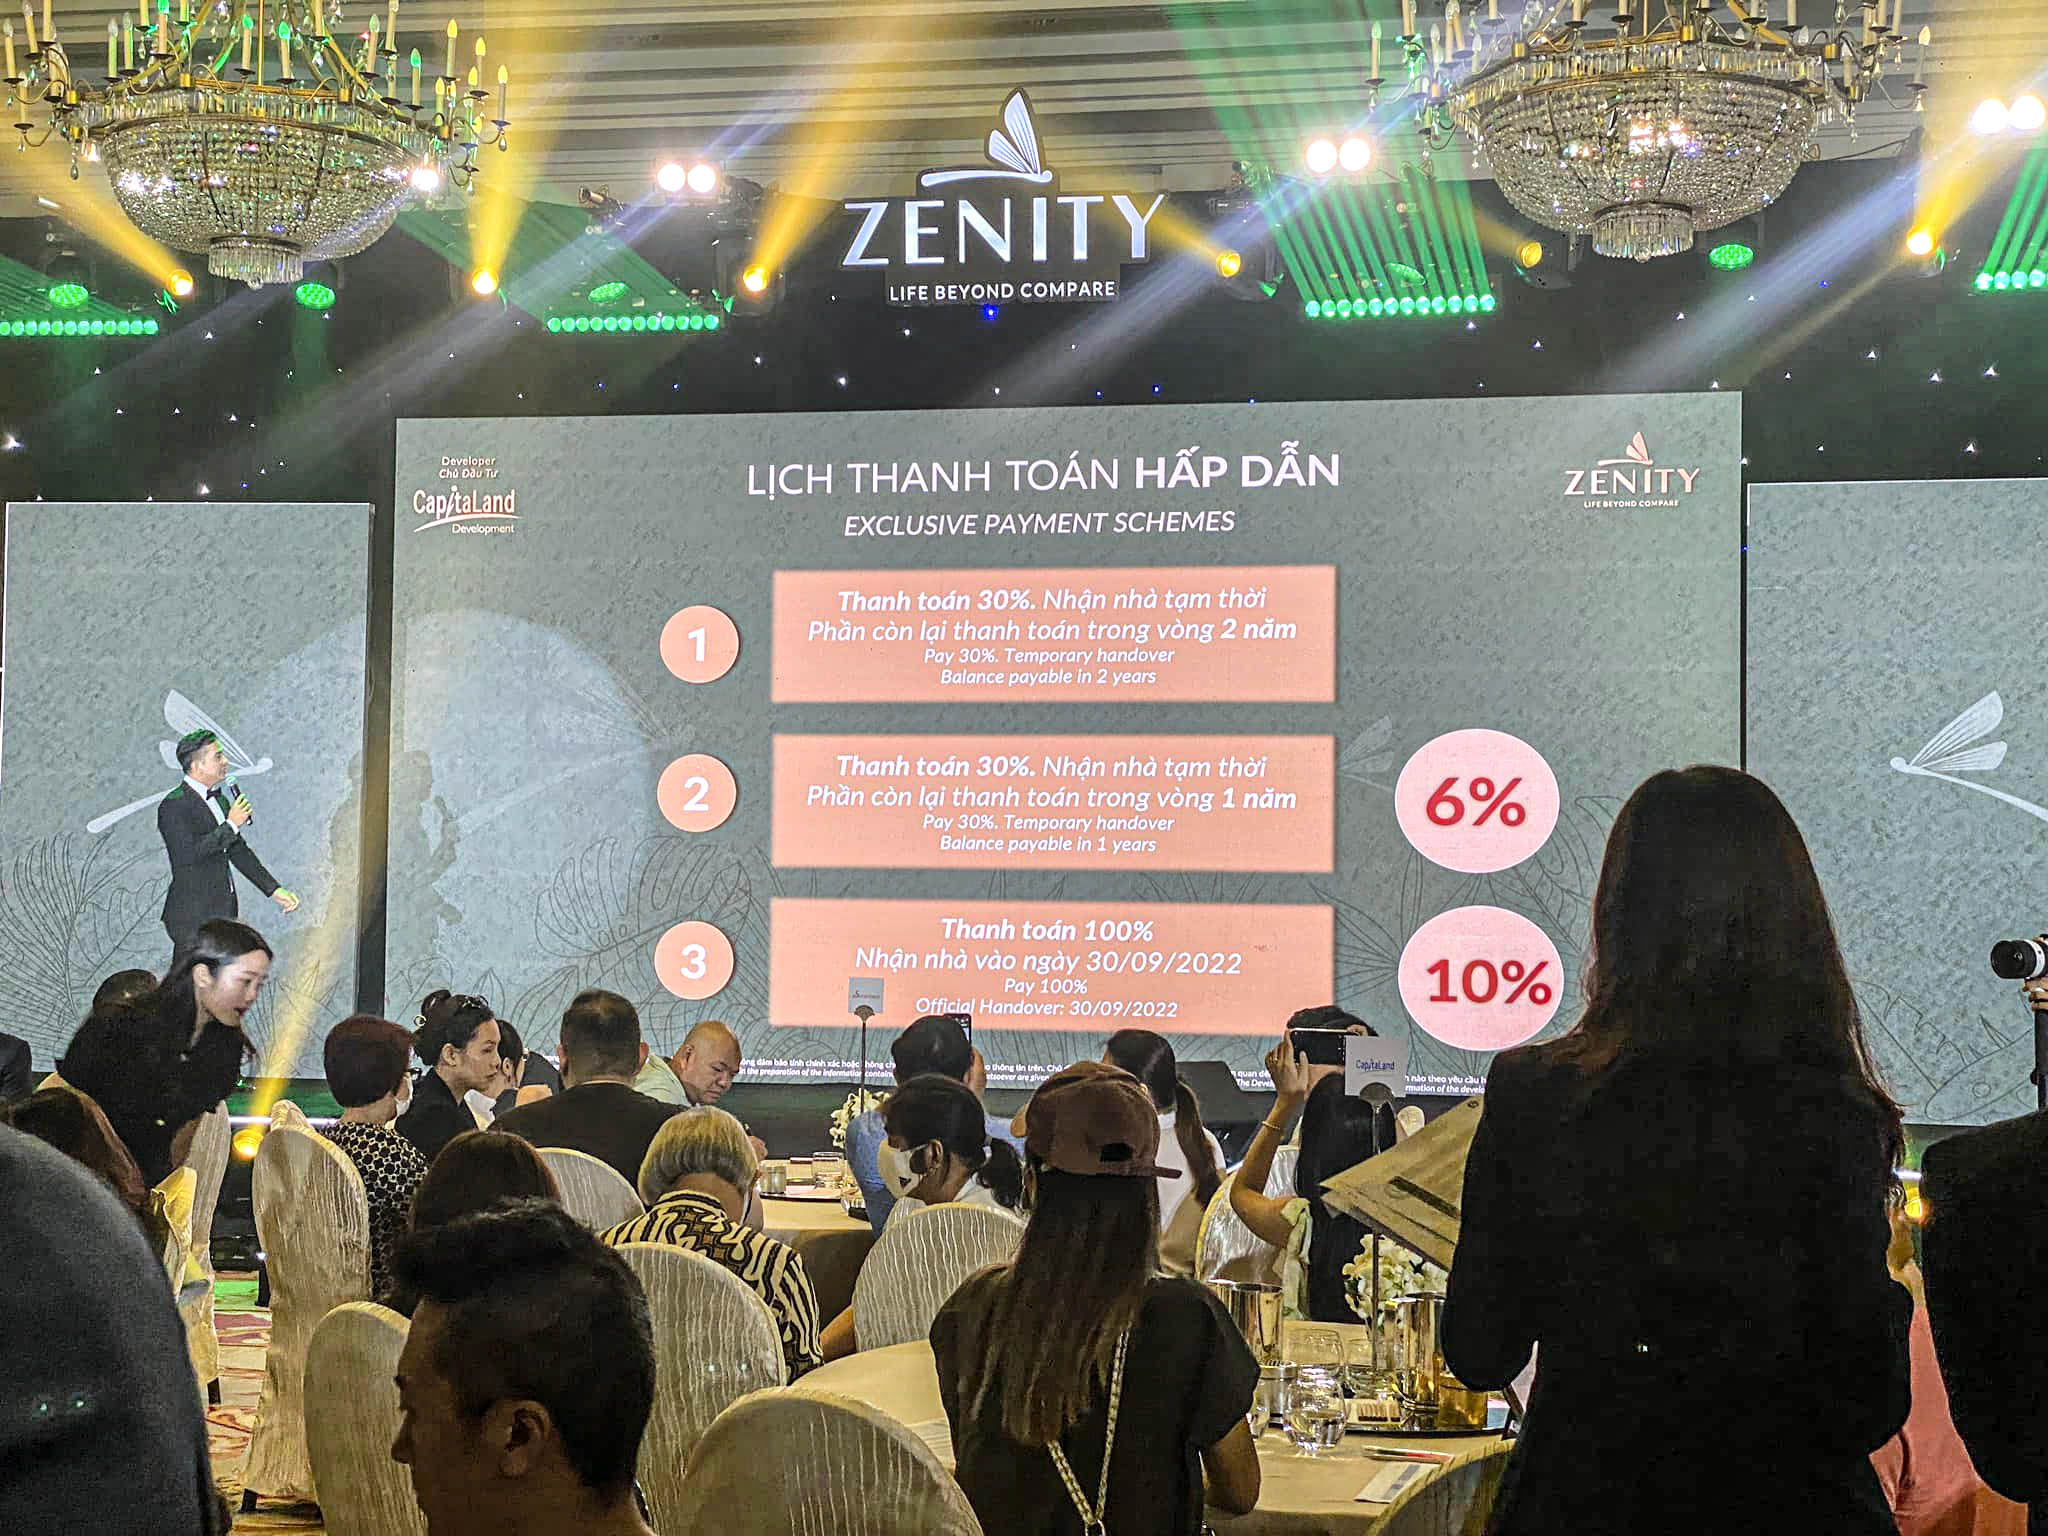 Zenity's Payment Schedule